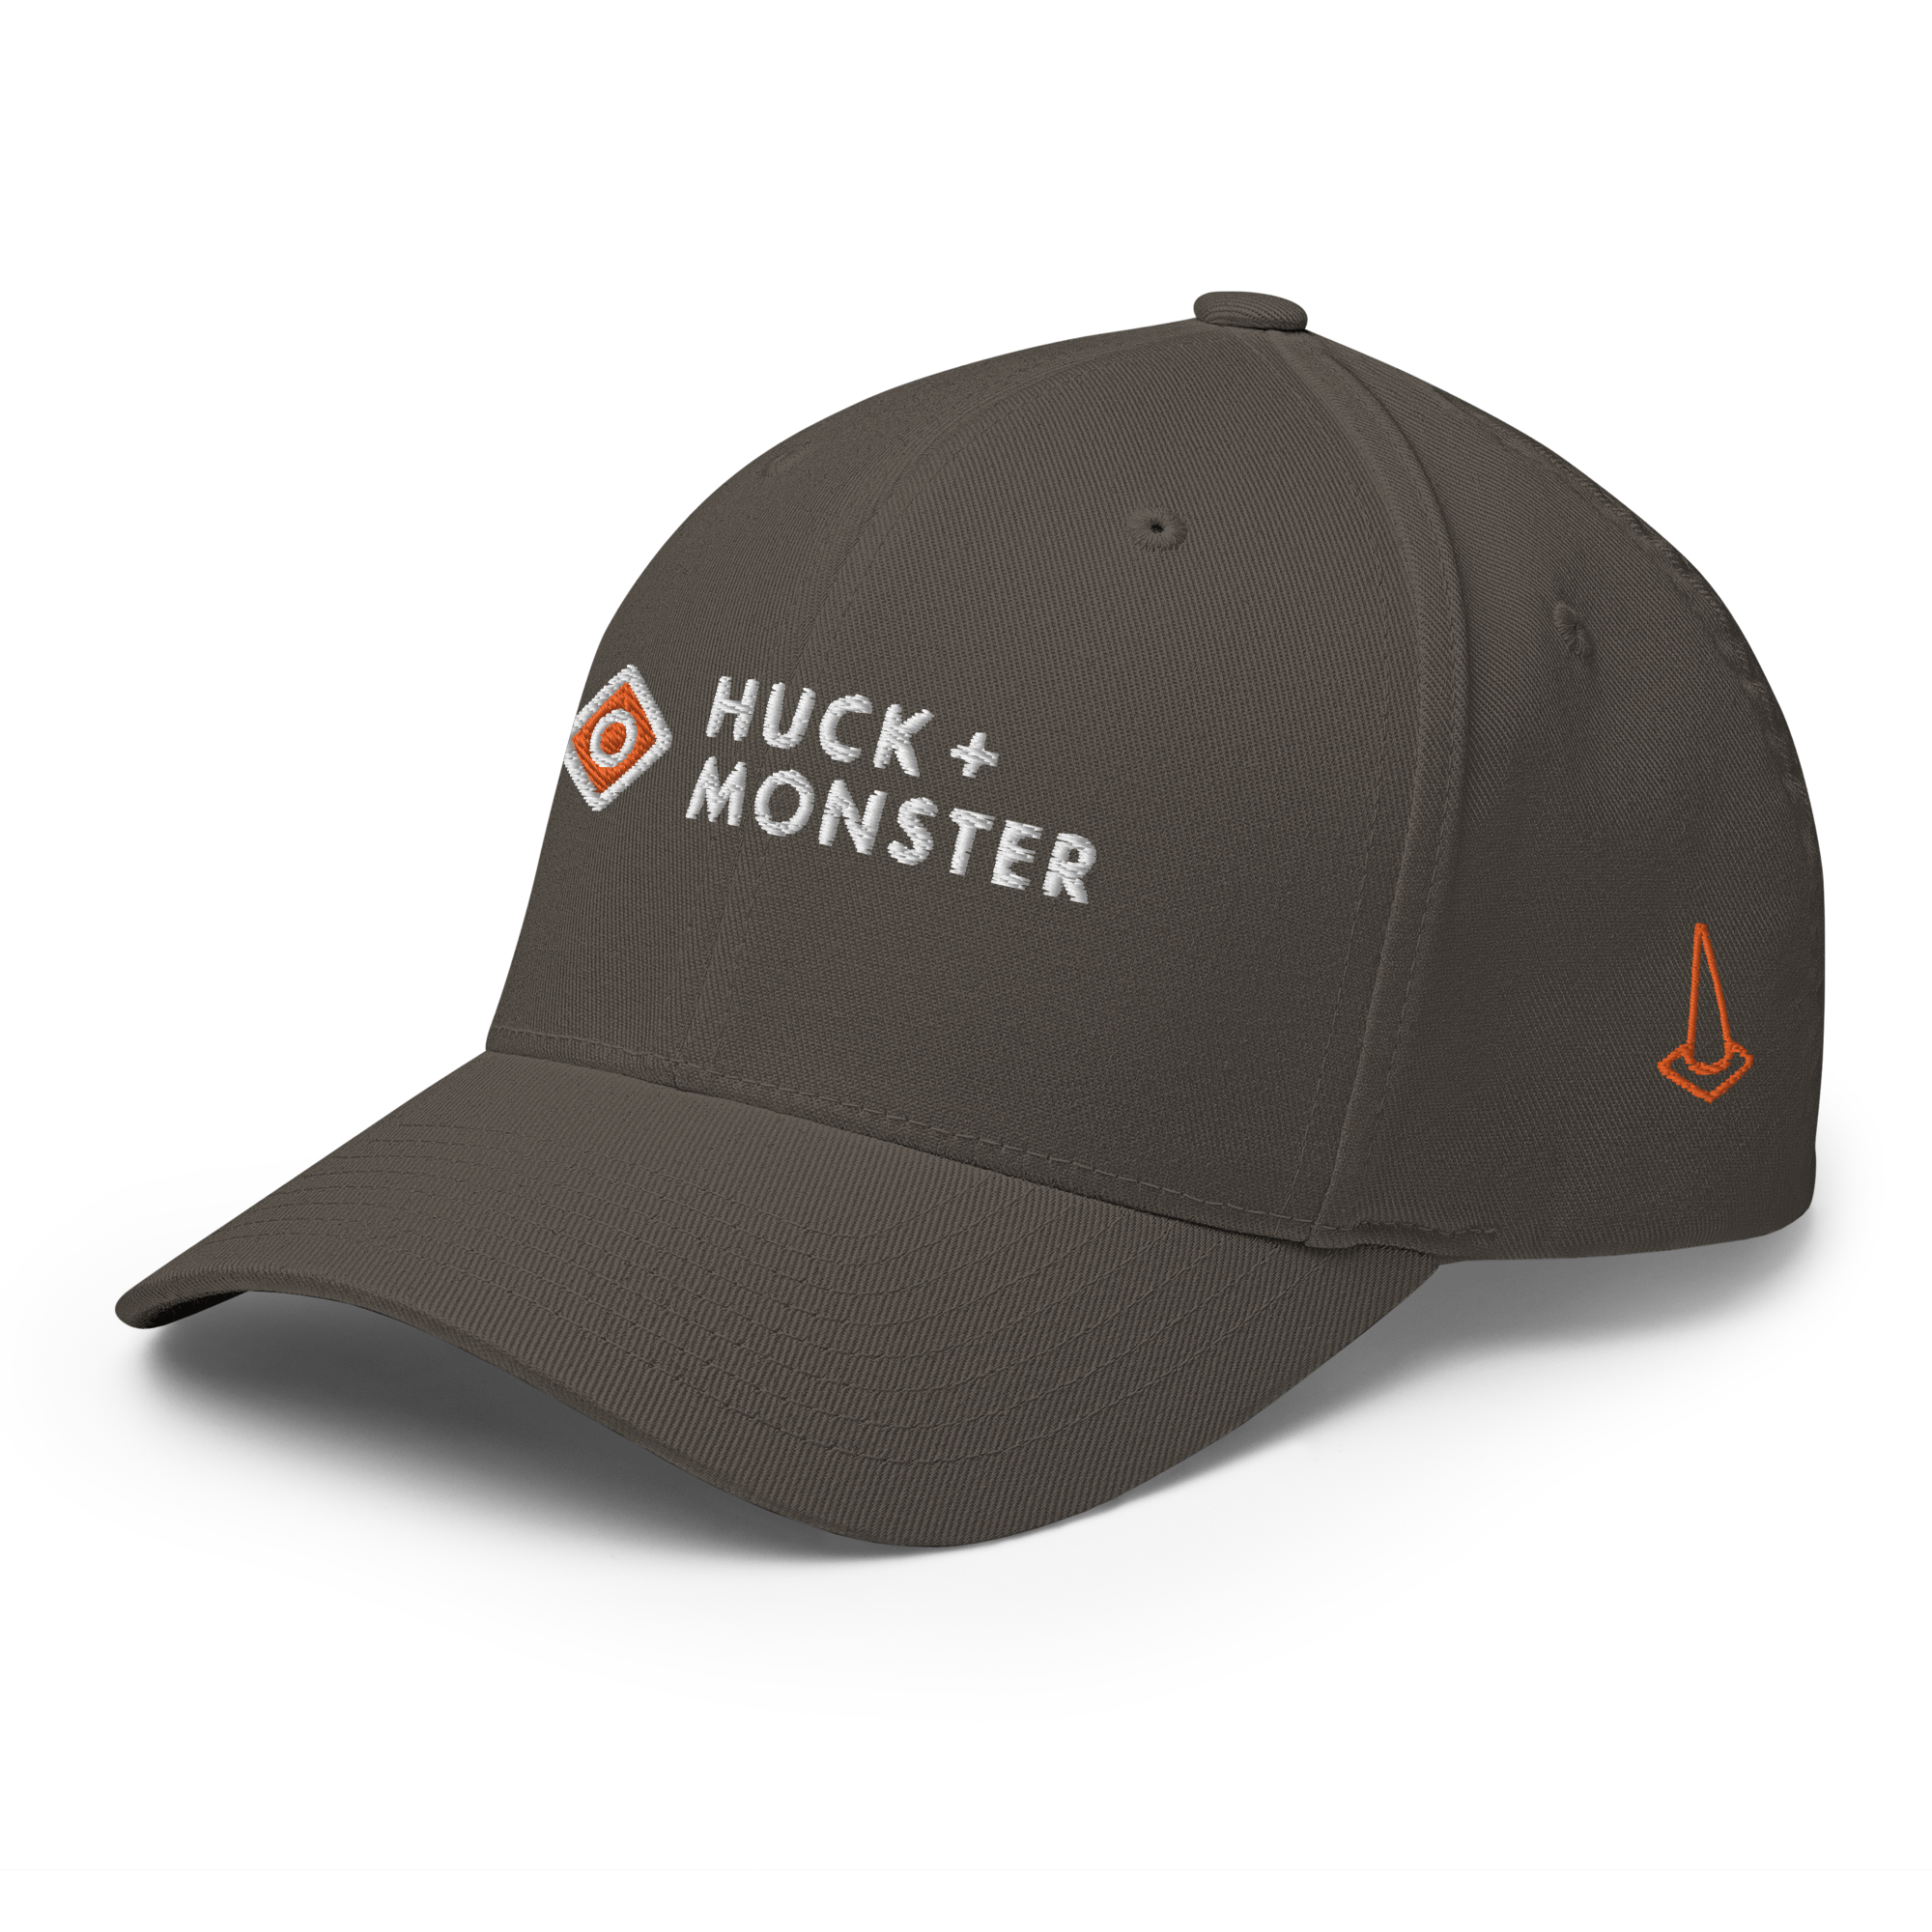 Cap Player Huck + Monster